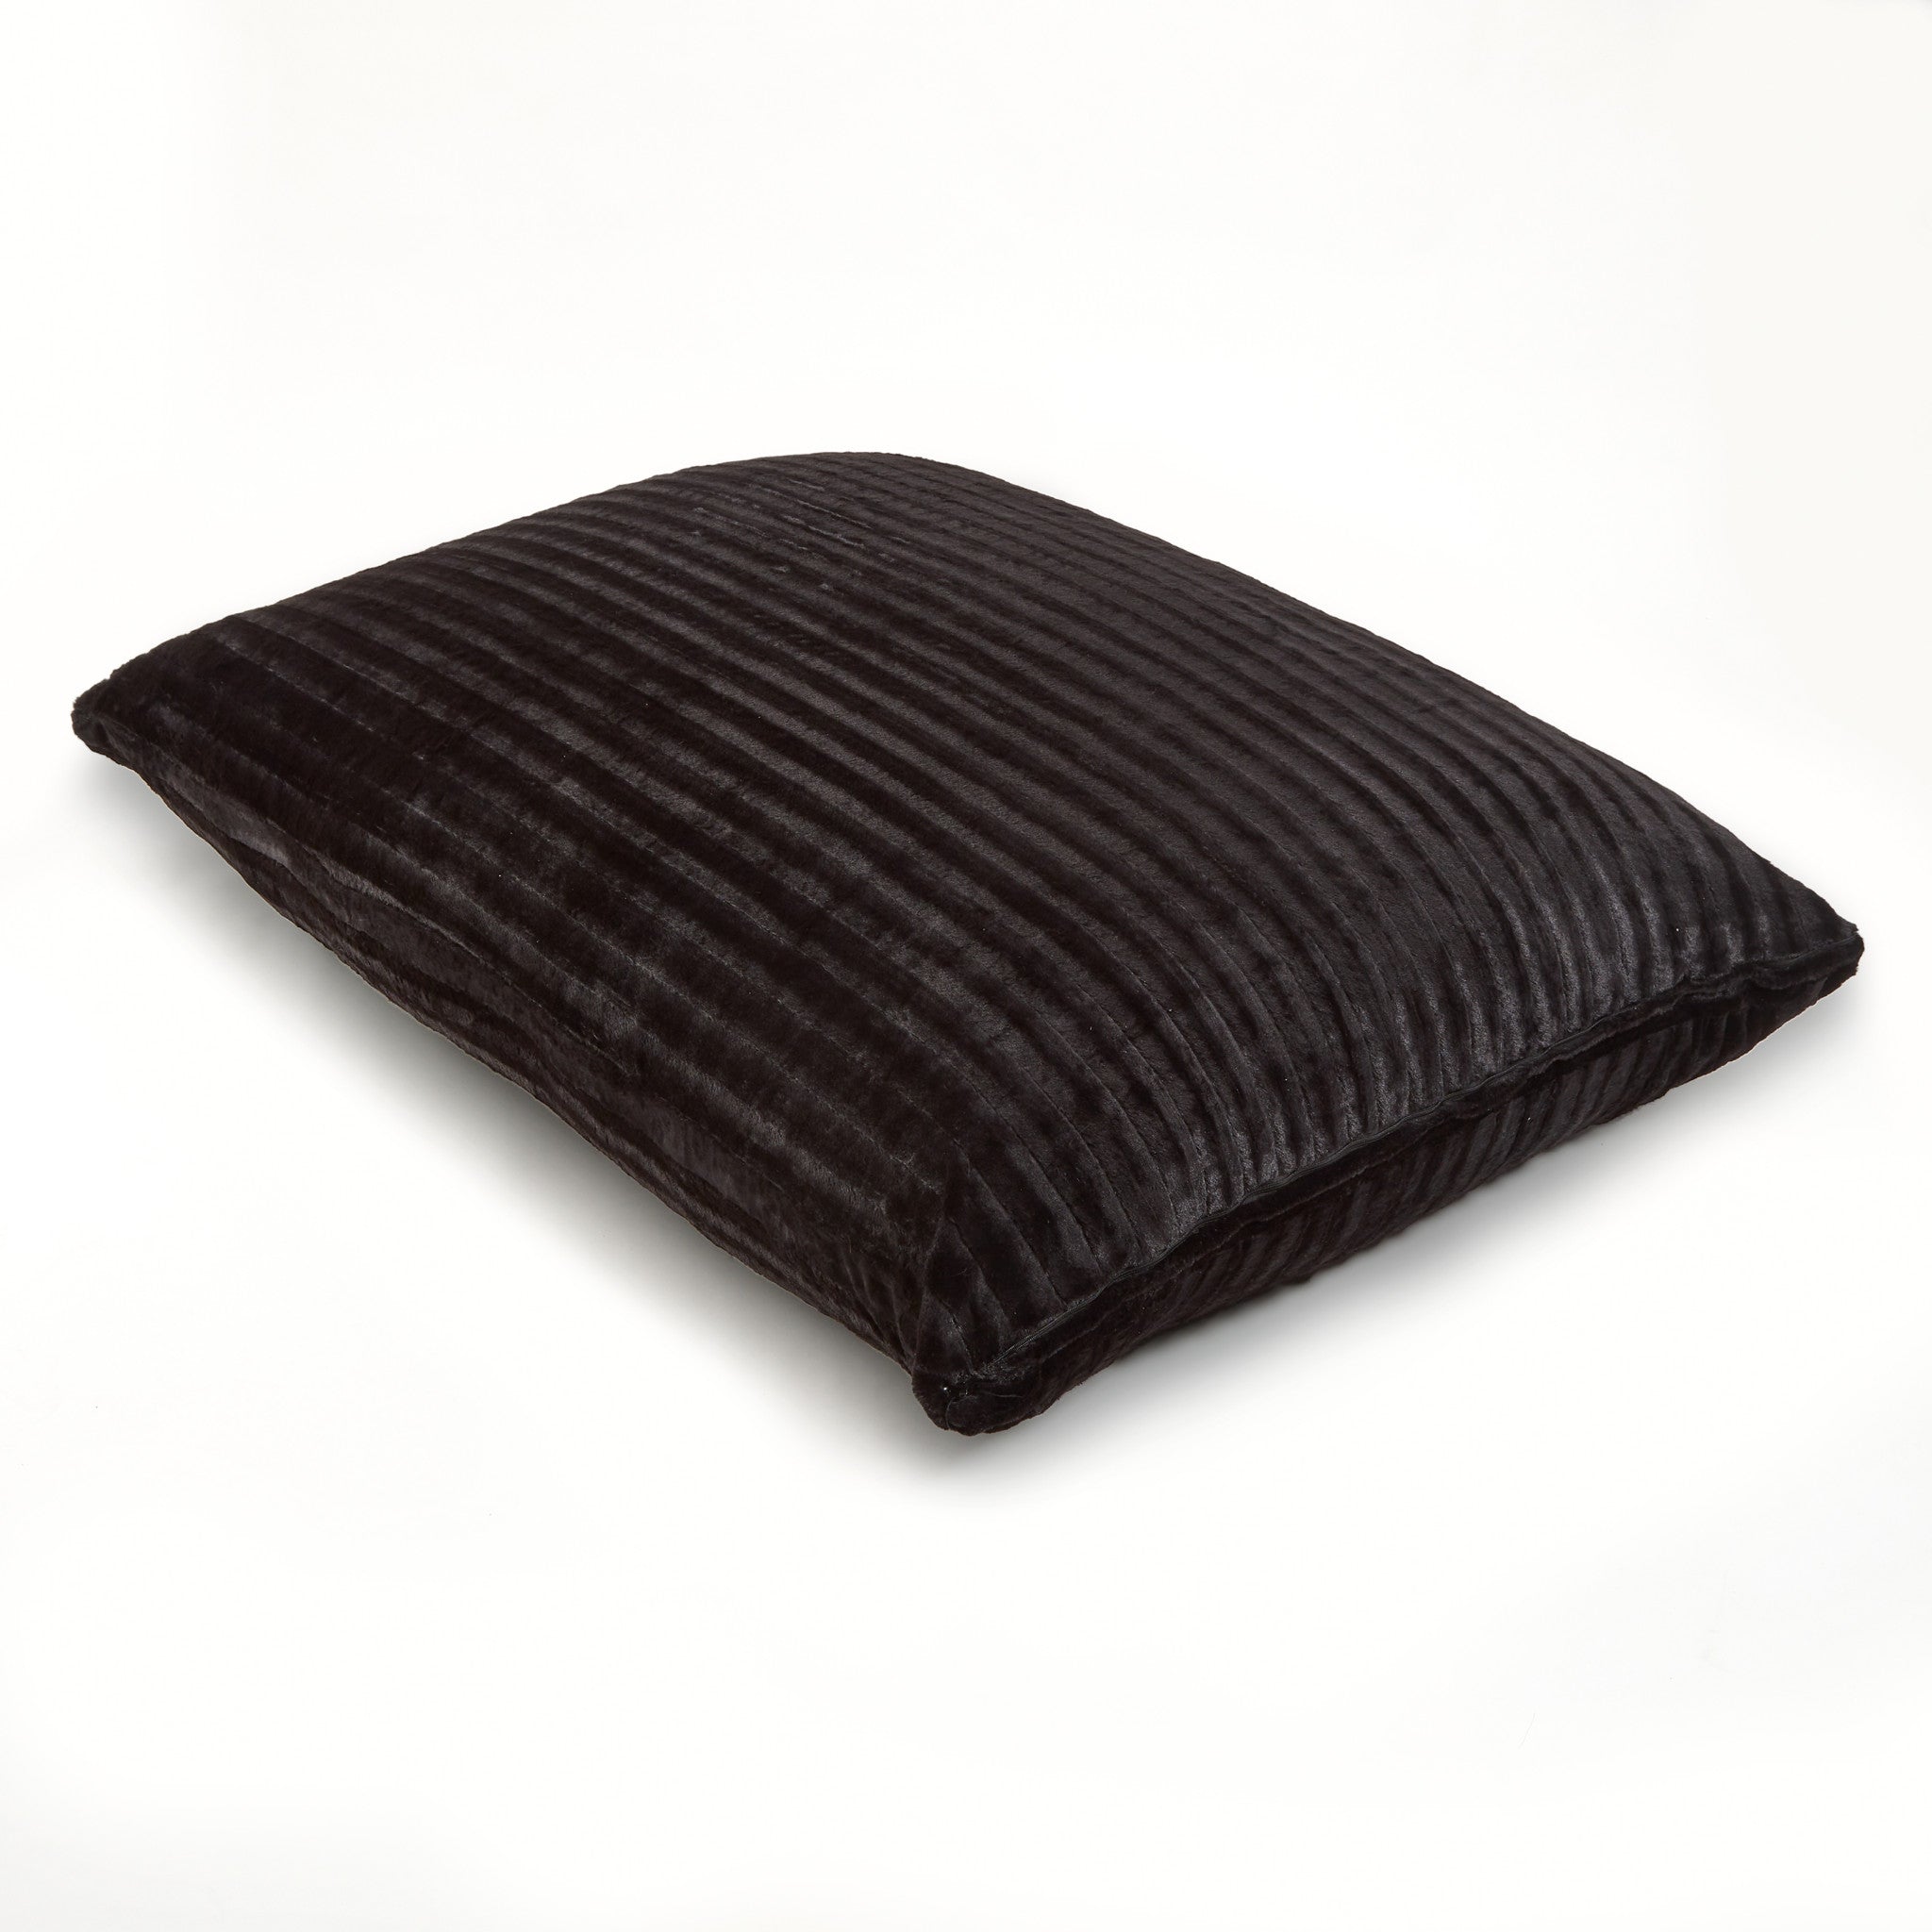 73" x 52" Black Faux Fur Sofa Sack Bean Bag Lounger - Tuesday Morning-Floor Chairs